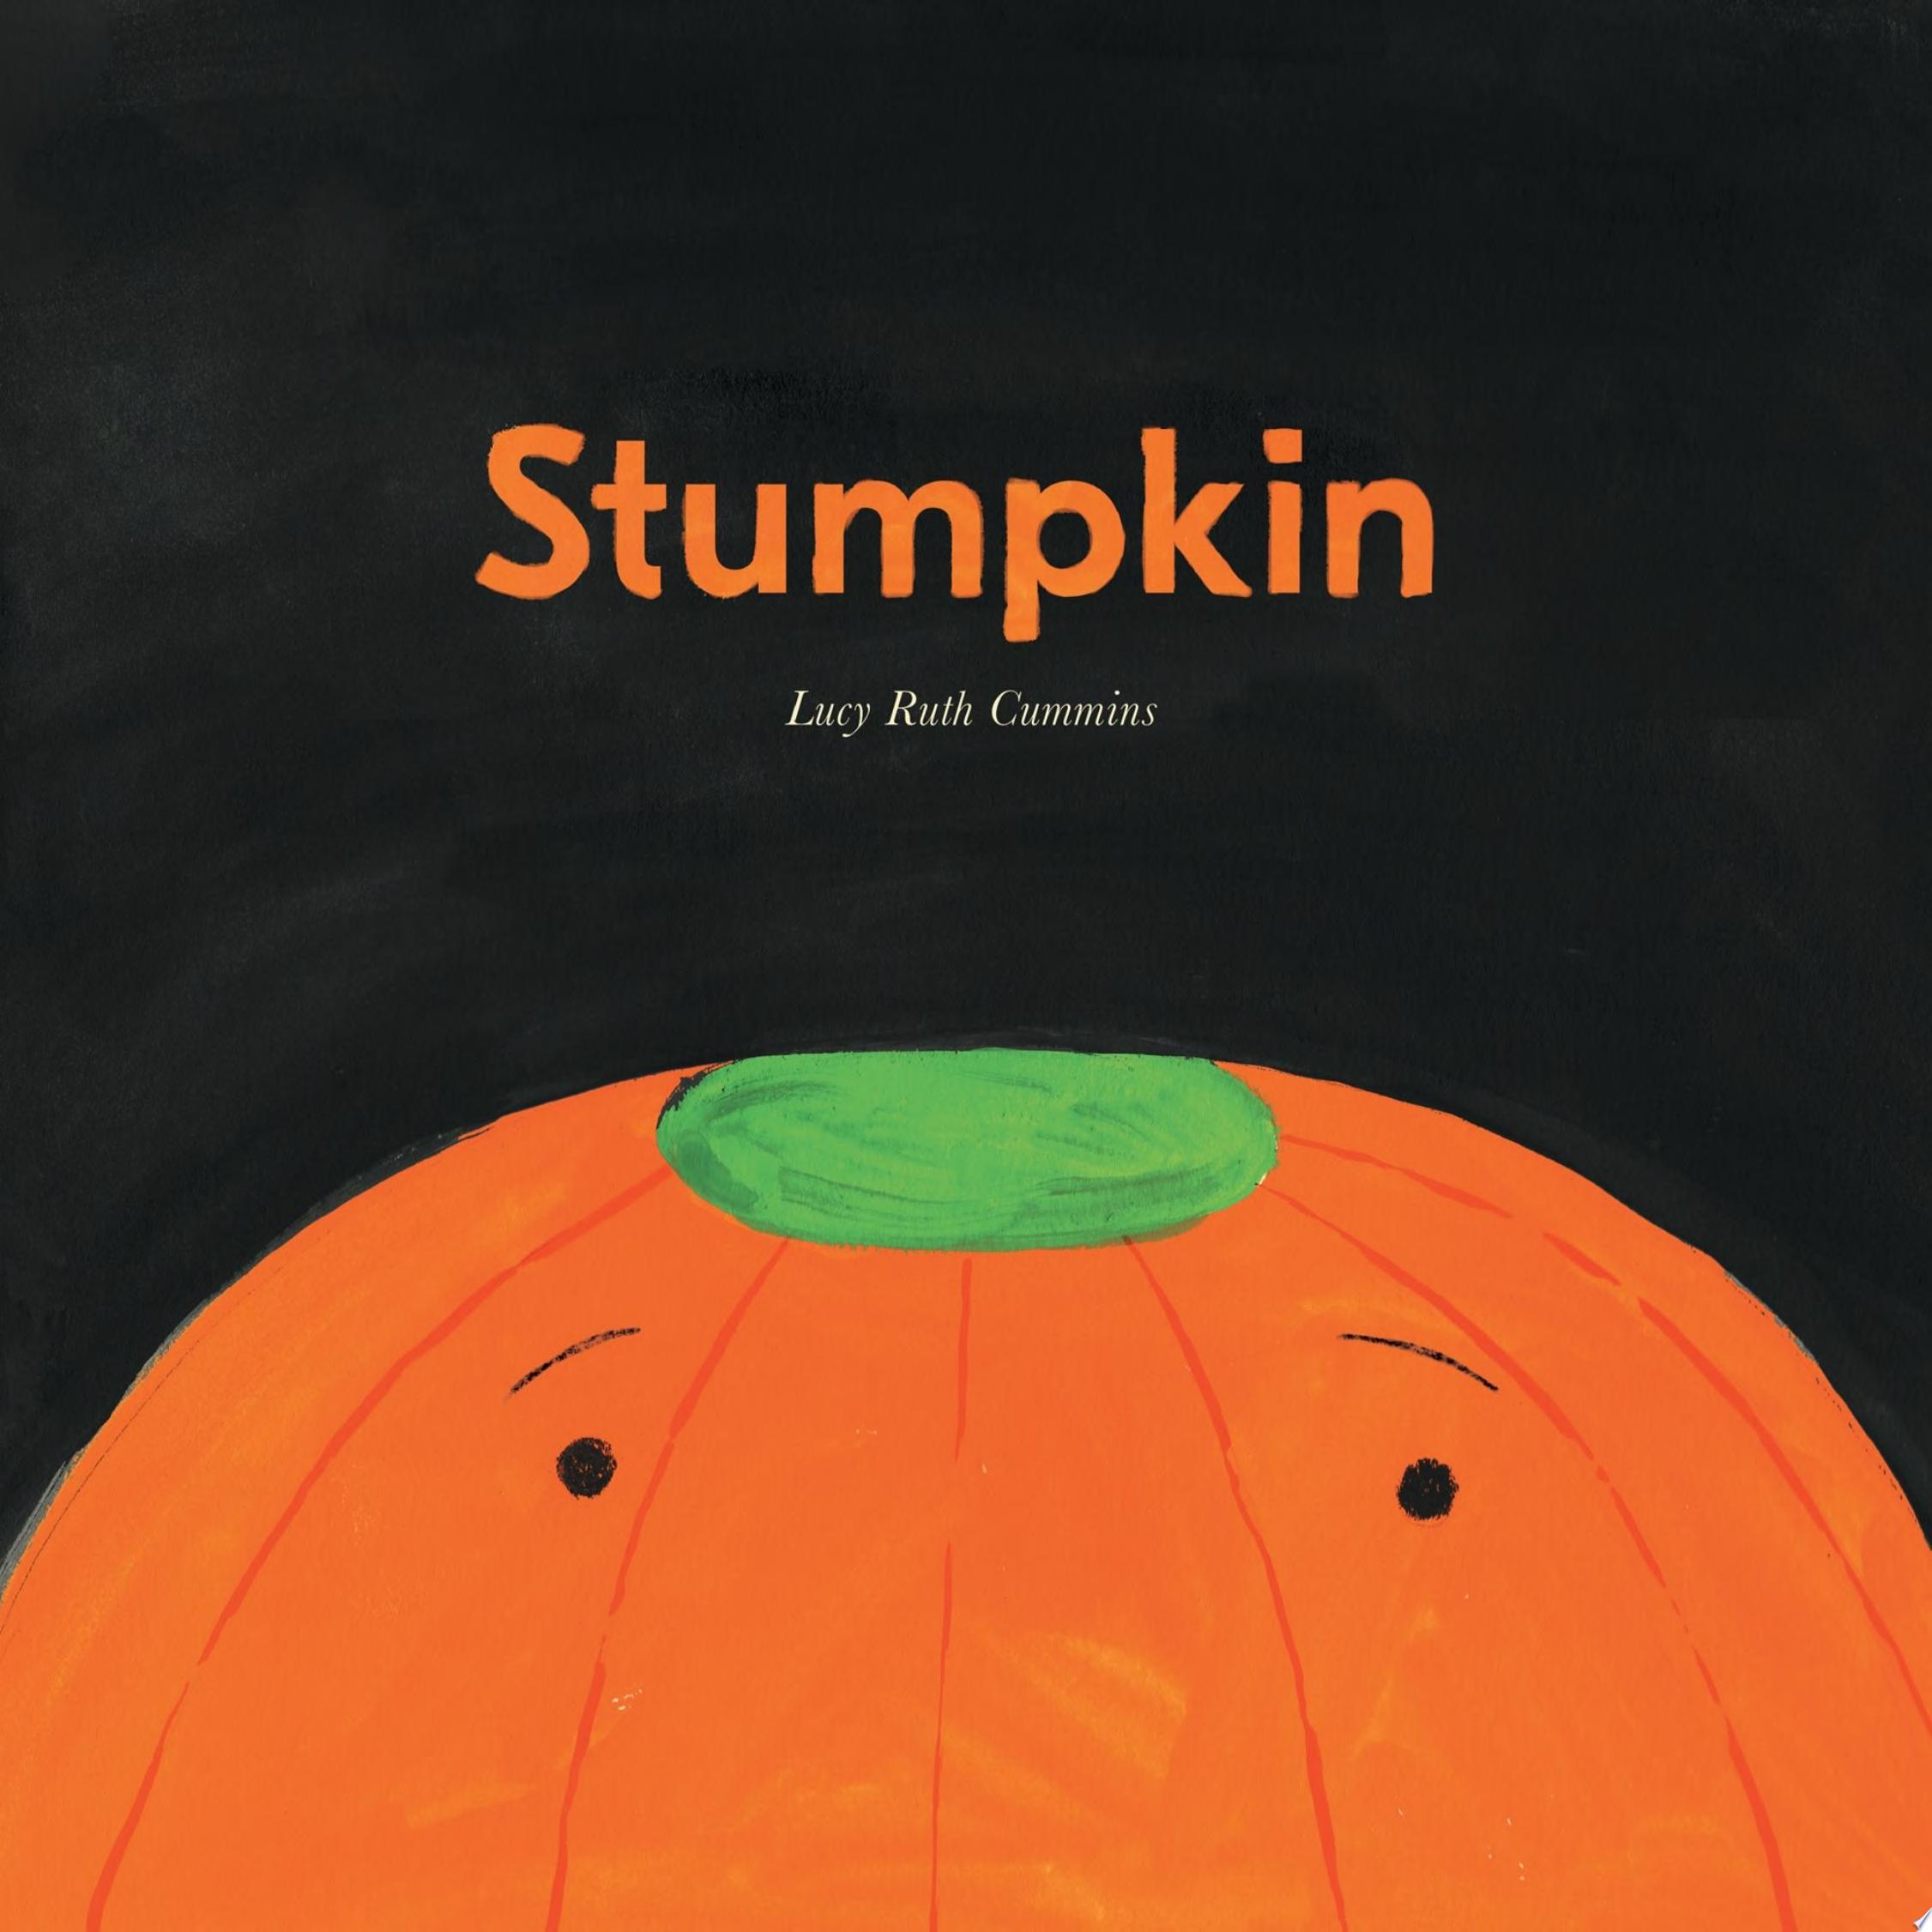 Image for "Stumpkin"